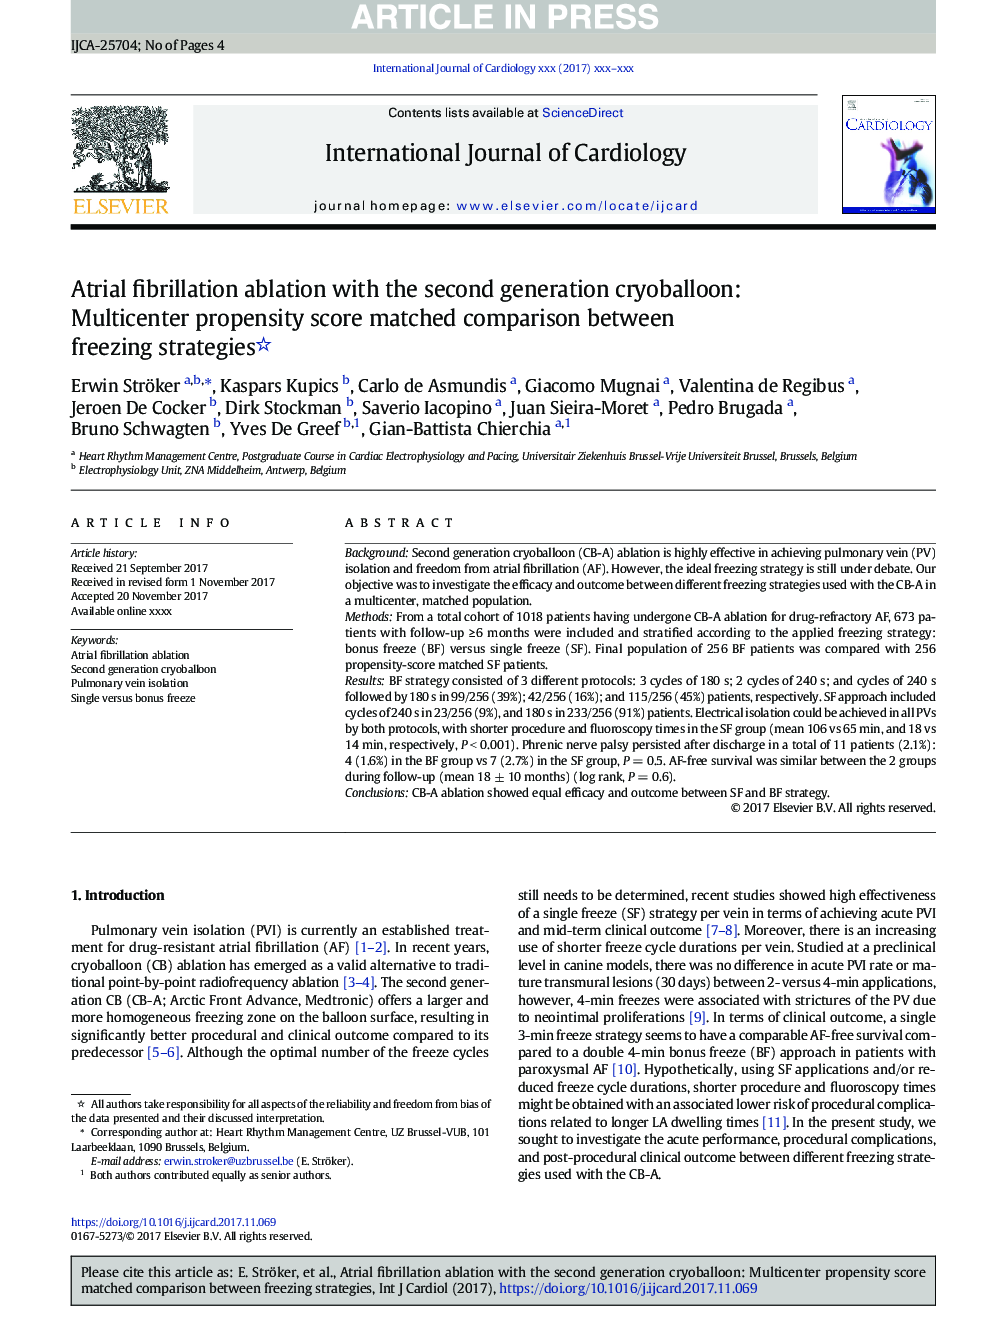 کاهش فیبریلاسیون دهلیزی با کریوبالون نسل دوم: نمره گرایش چندگانه مقایسه شده بین استراتژی های انجماد 